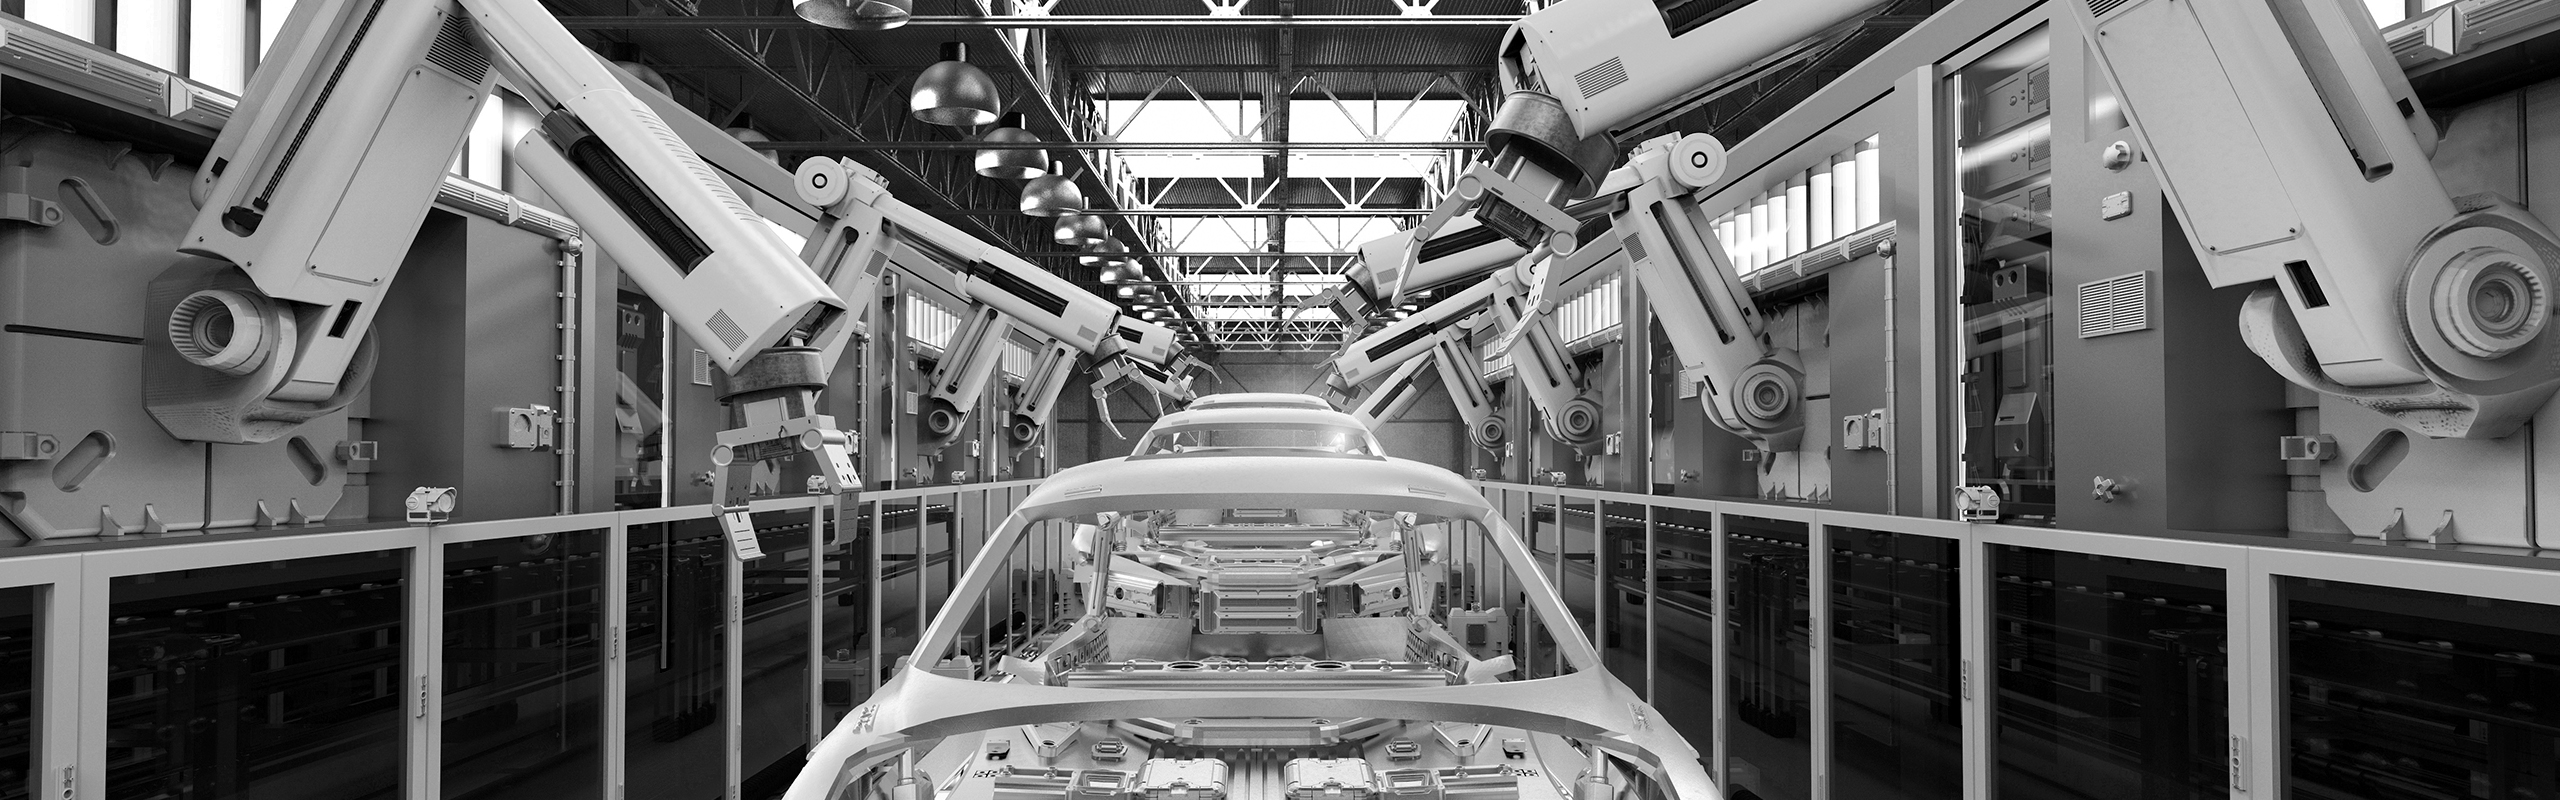 Car manufacturing floor